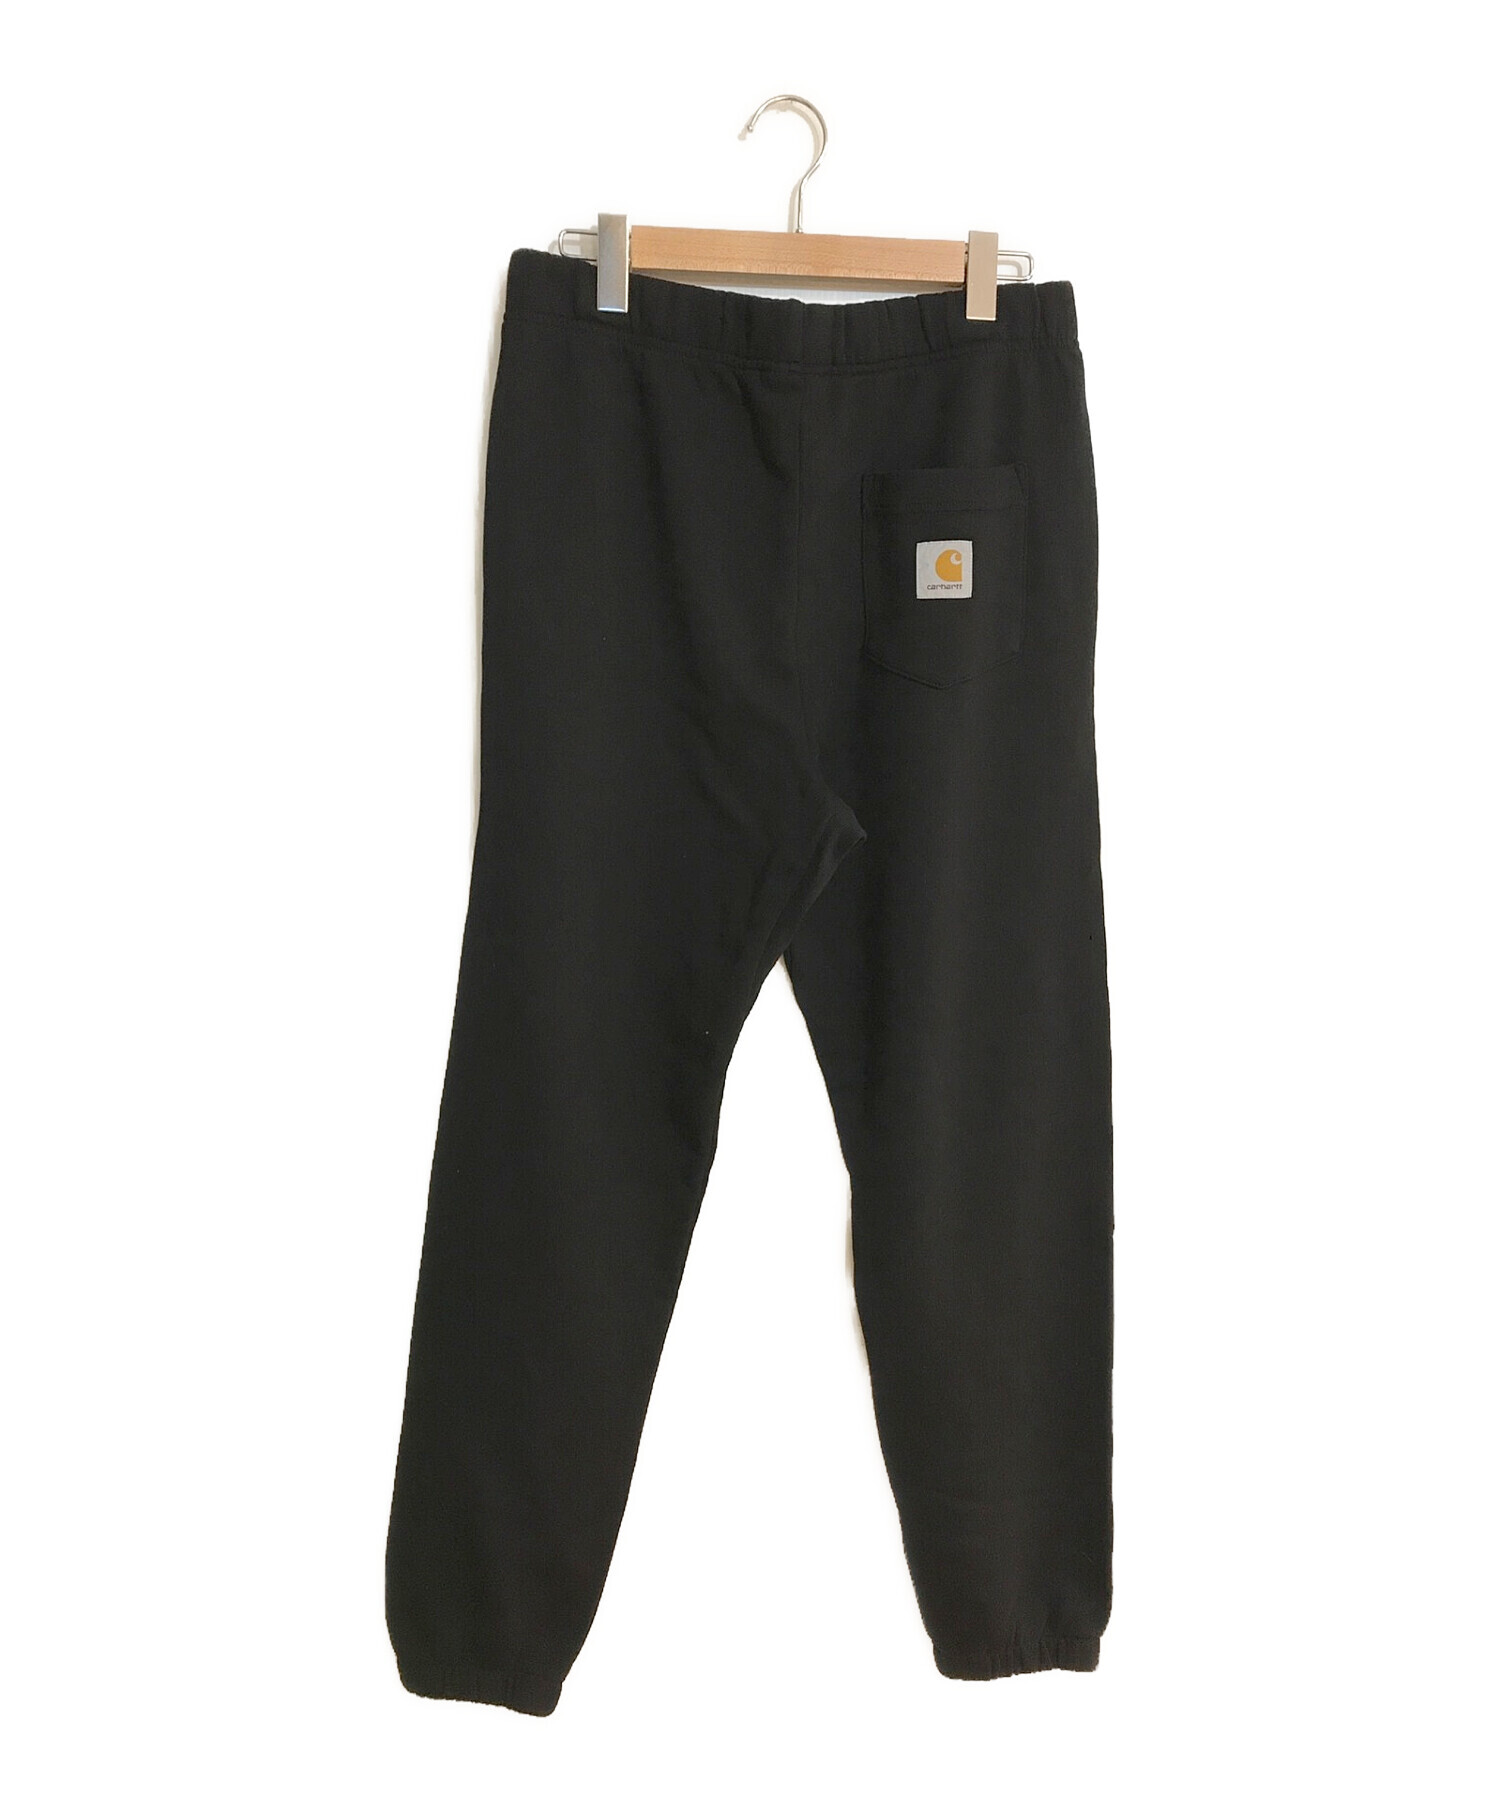 Carhartt WIP (カーハートダブリューアイピー) pocket sweat pant/ポケットスウェットパンツ ブラック サイズ:SIZE M